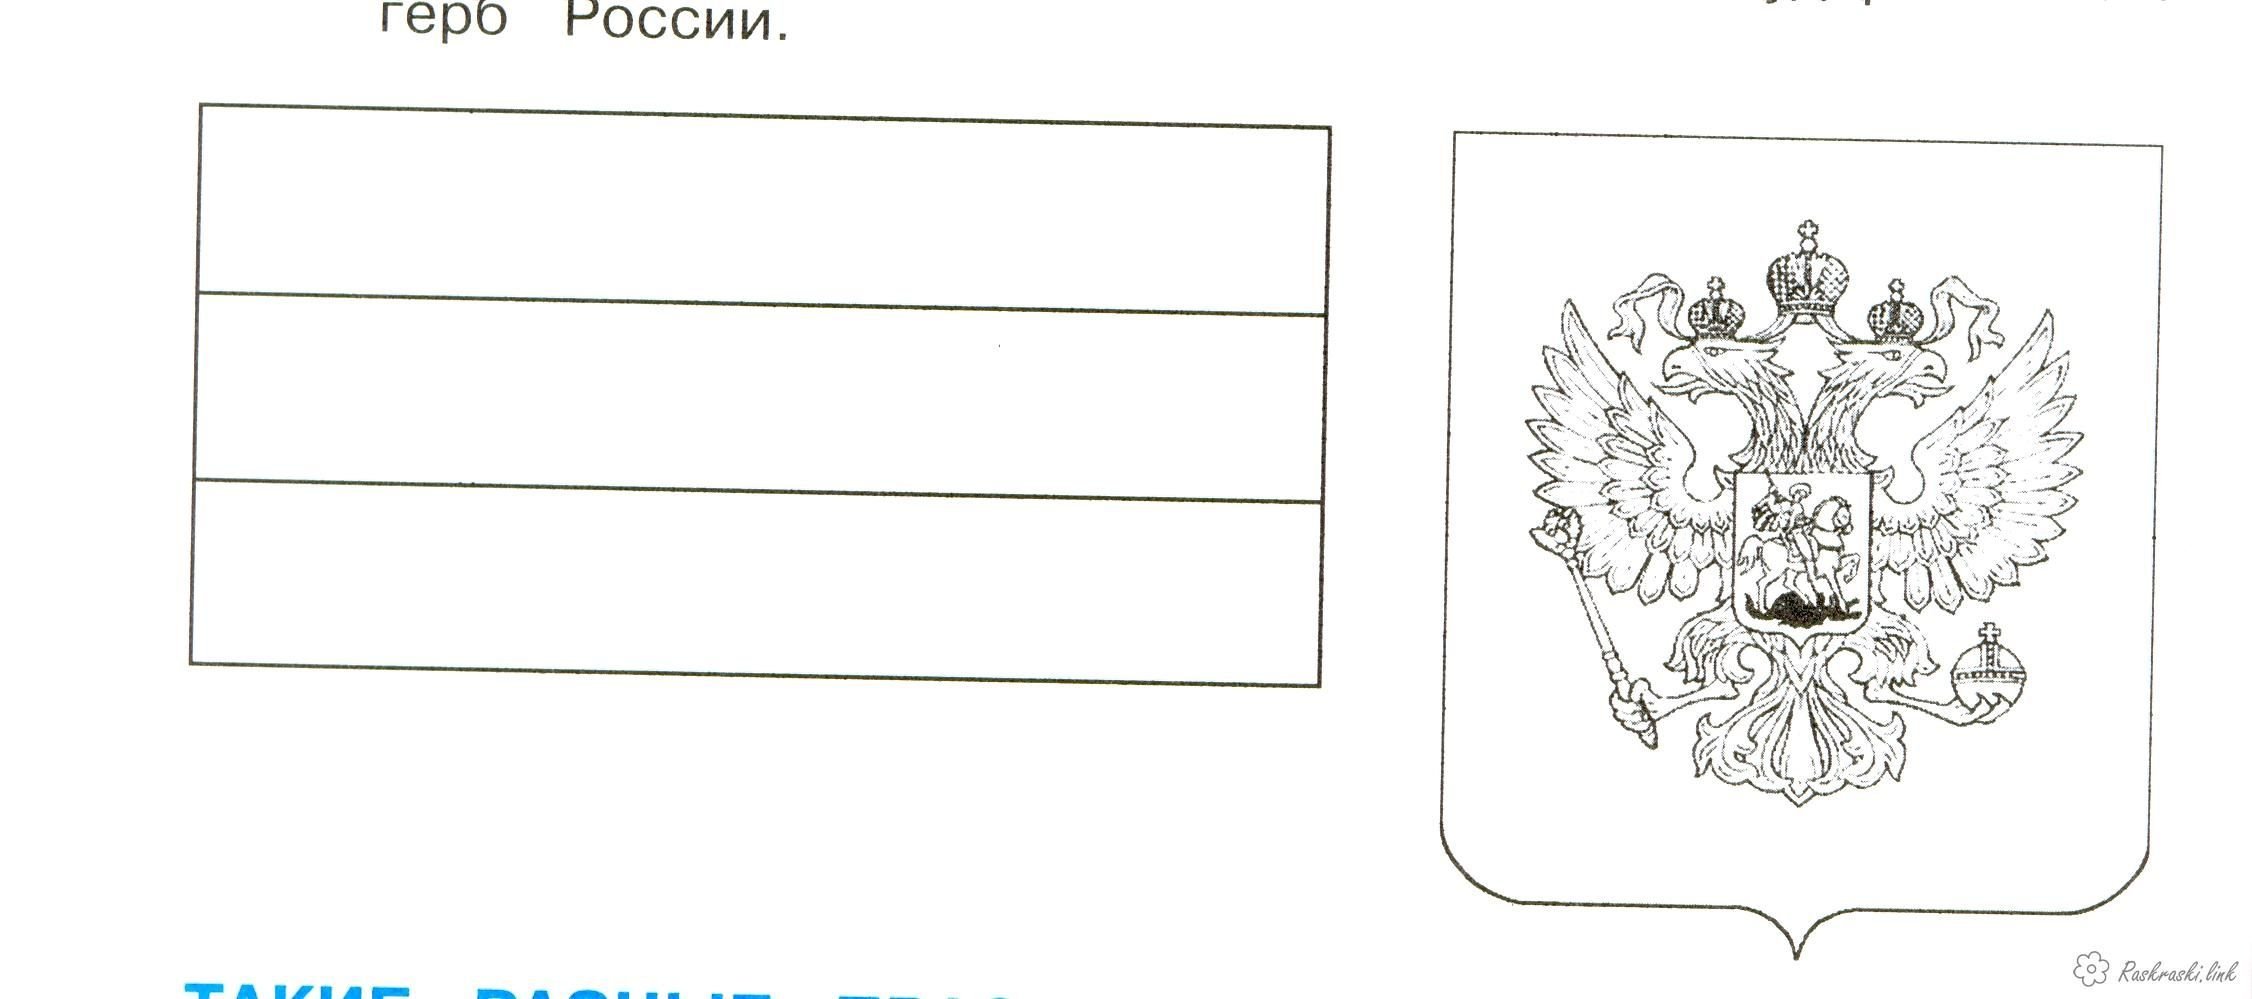 Герб россии рисунок легкий для детей поэтапно фото